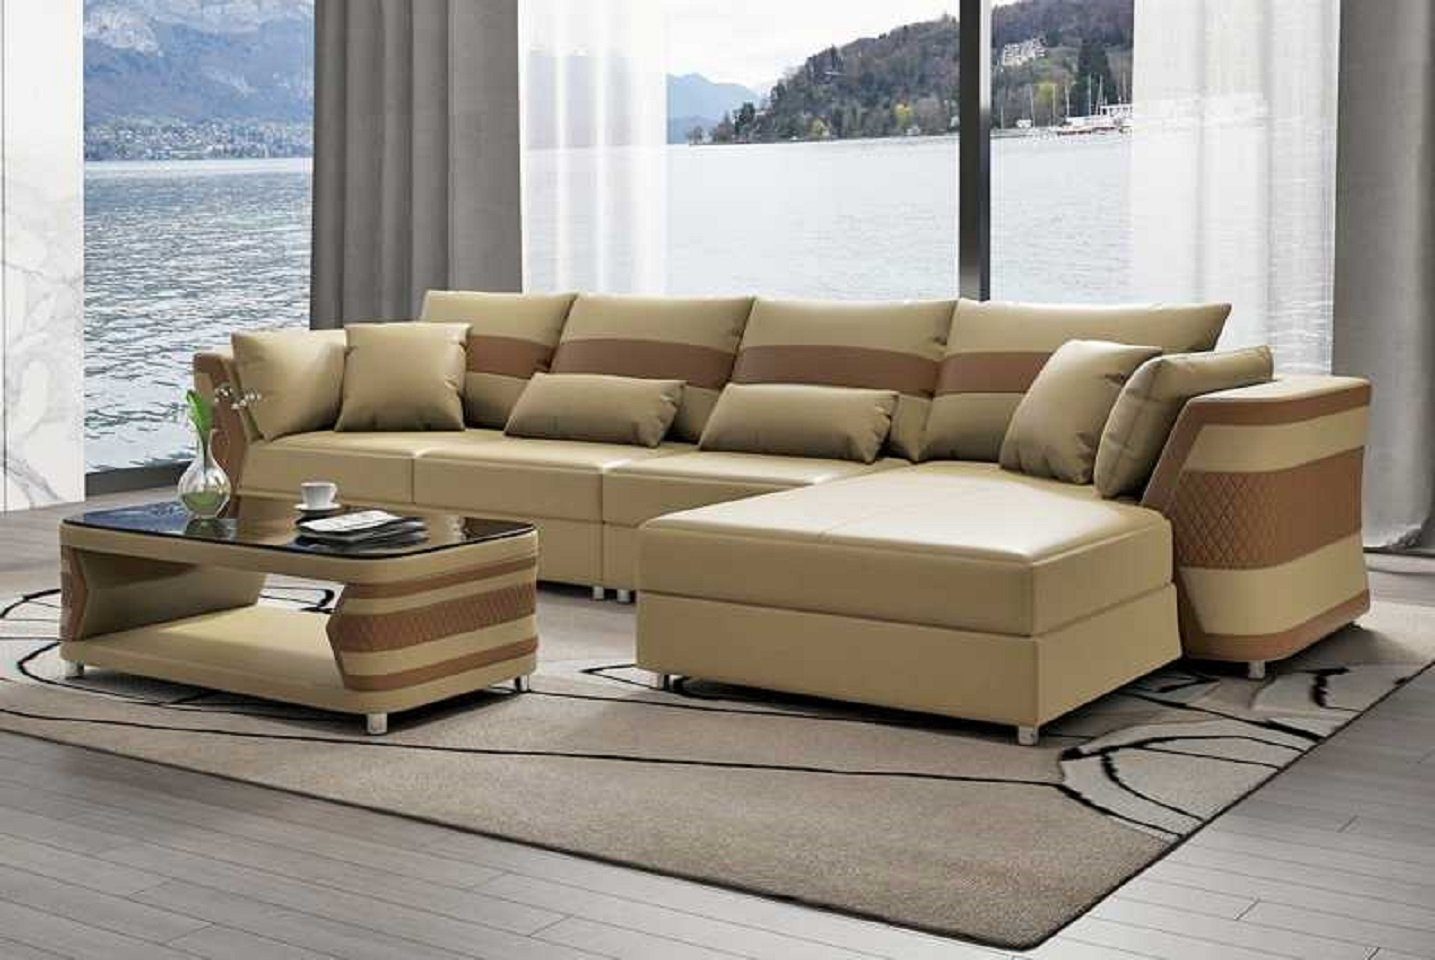 JVmoebel Ecksofa Wohnzimmer Ecksofa L Form Couch Sofa Luxus Moderne Eckgarnitur, 3 Teile, Made in Europe Beige